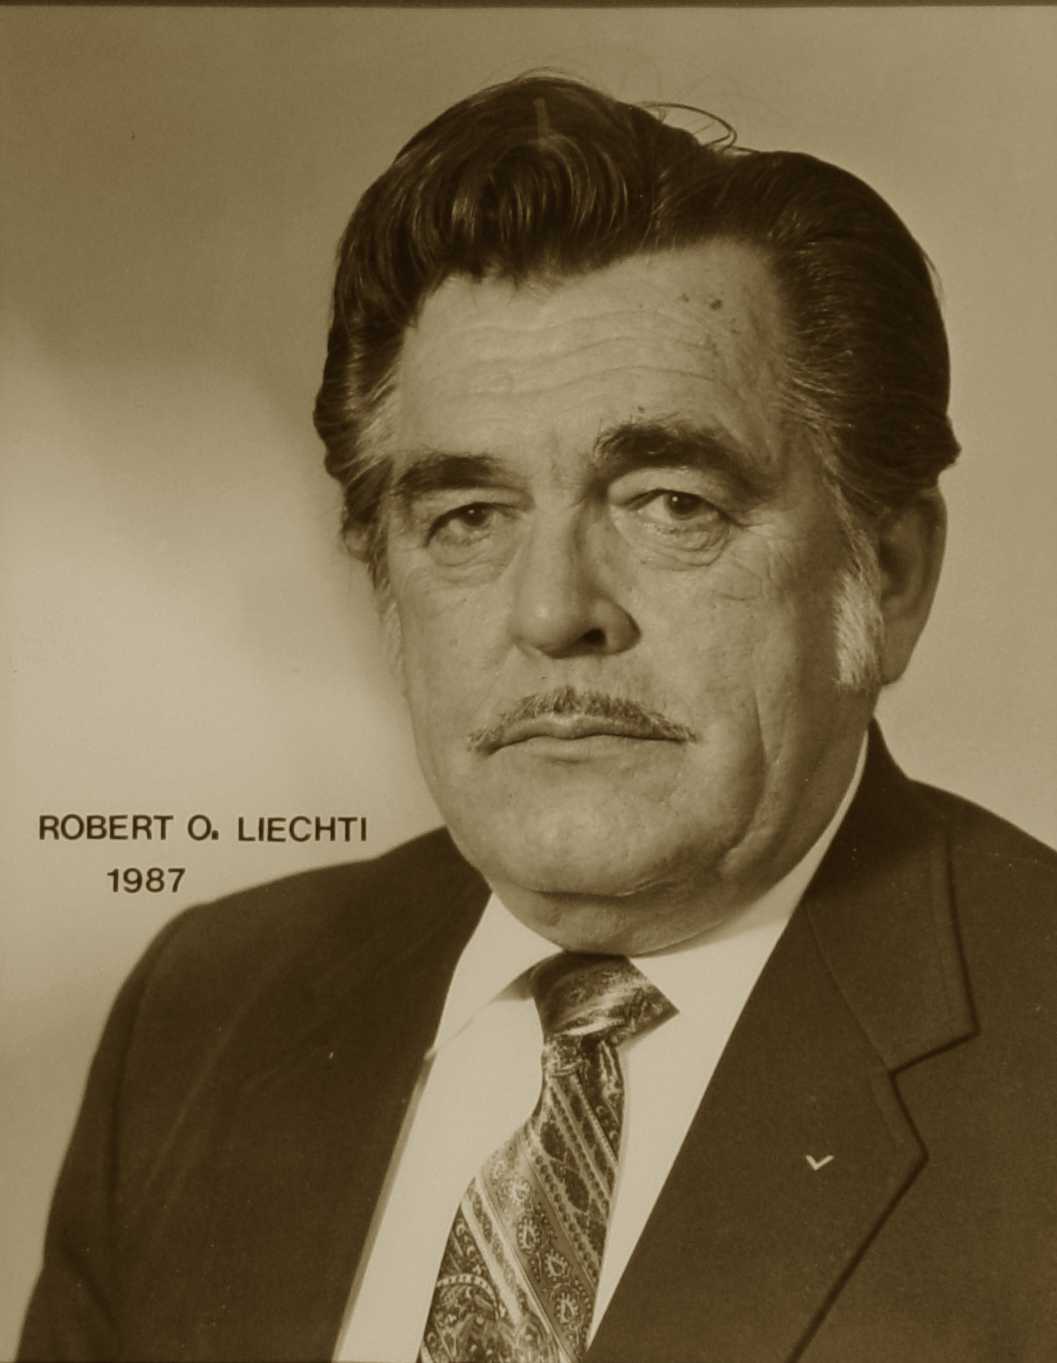 Robert O. Liechti, 1987